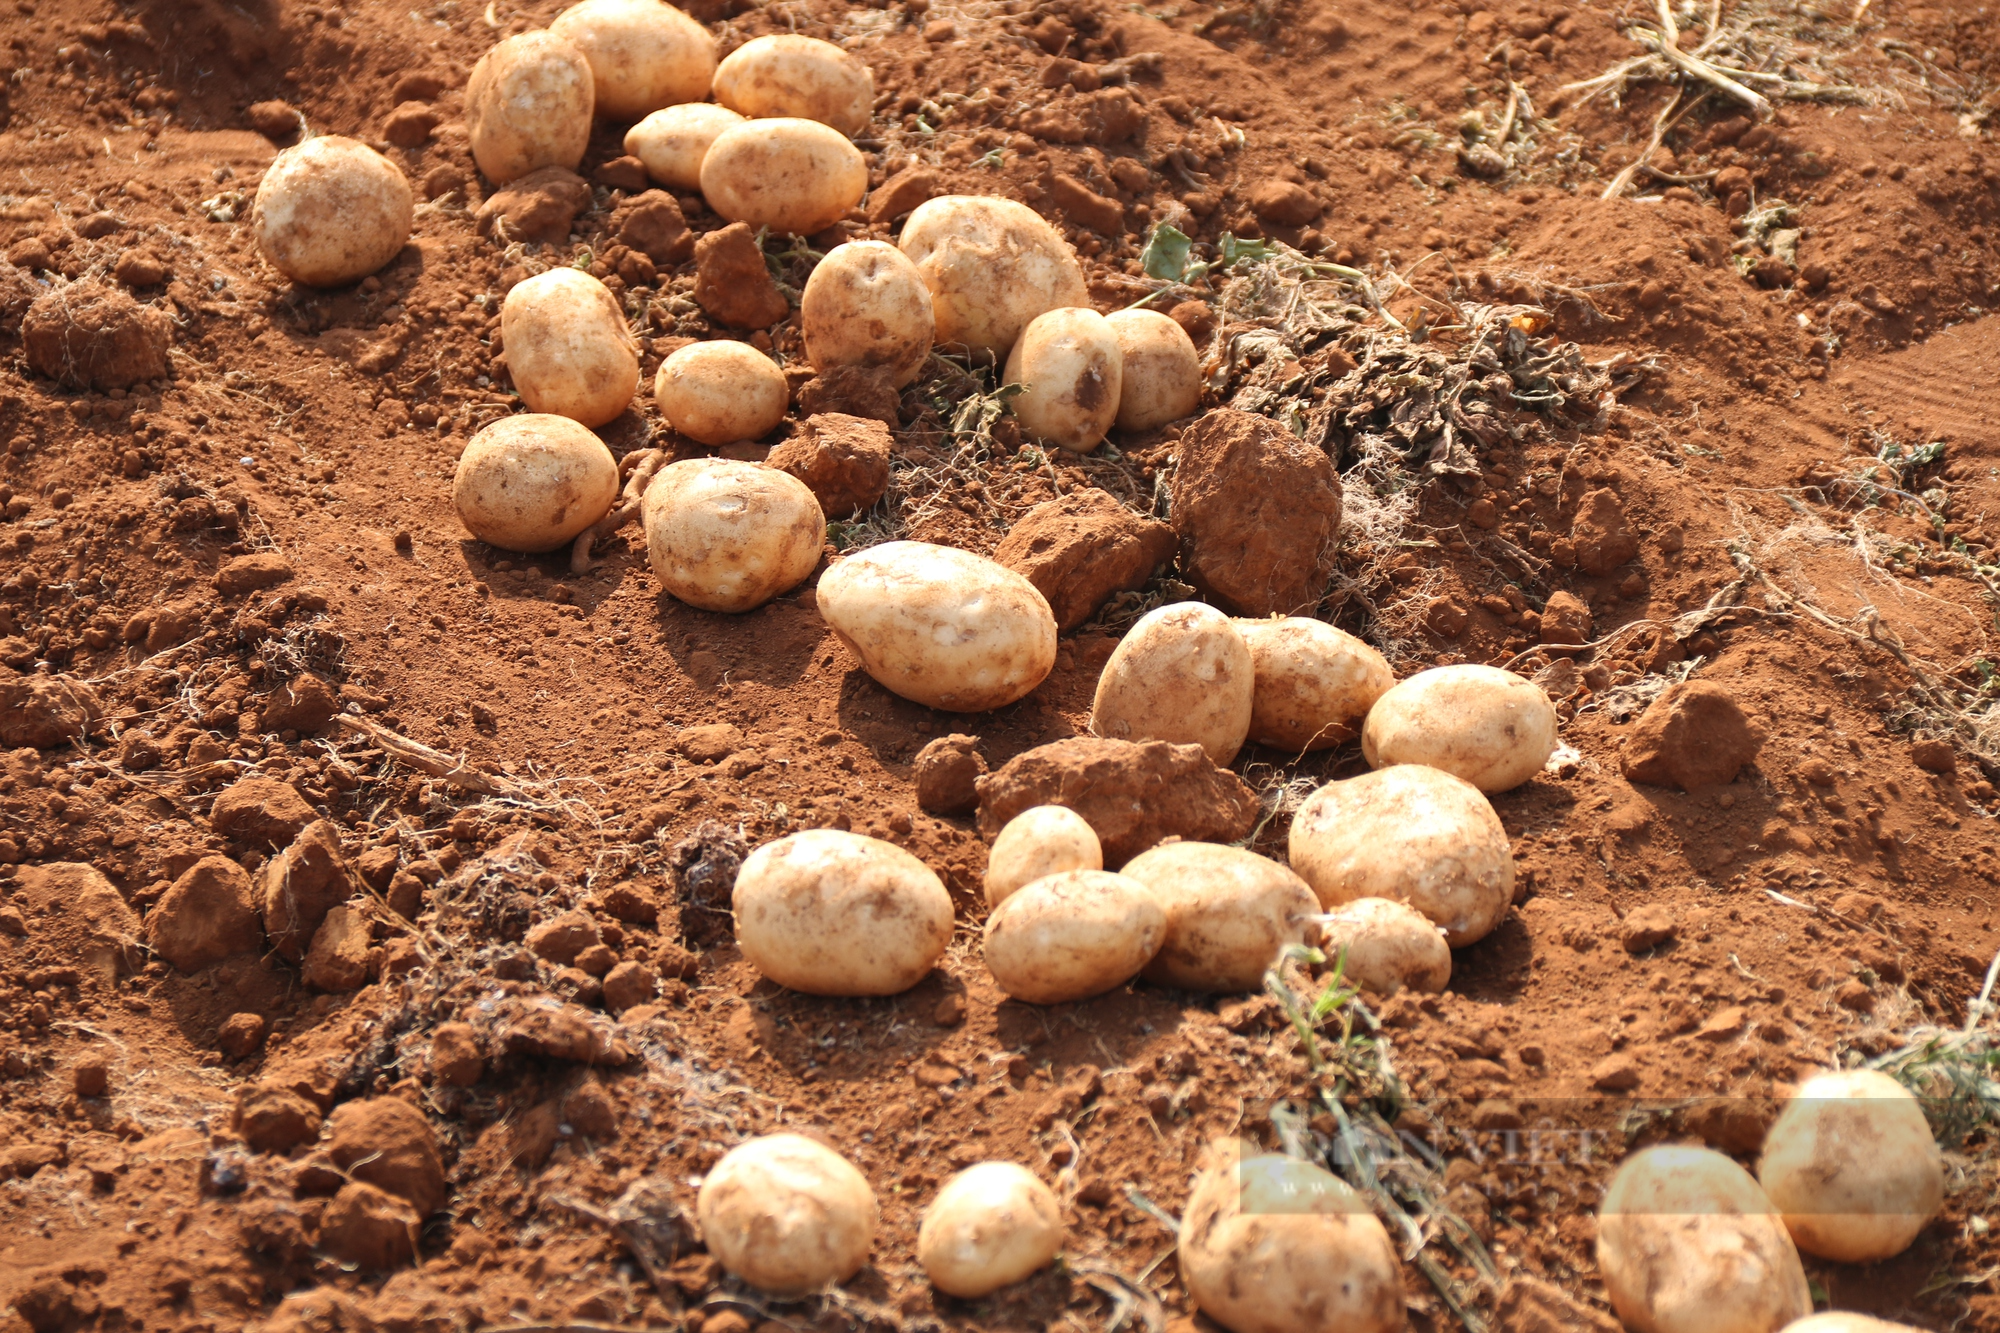 Liên kết trồng khoai tây với Syngenta và Pepsico, nông dân thu lãi cả trăm triệu đồng - Ảnh 4.